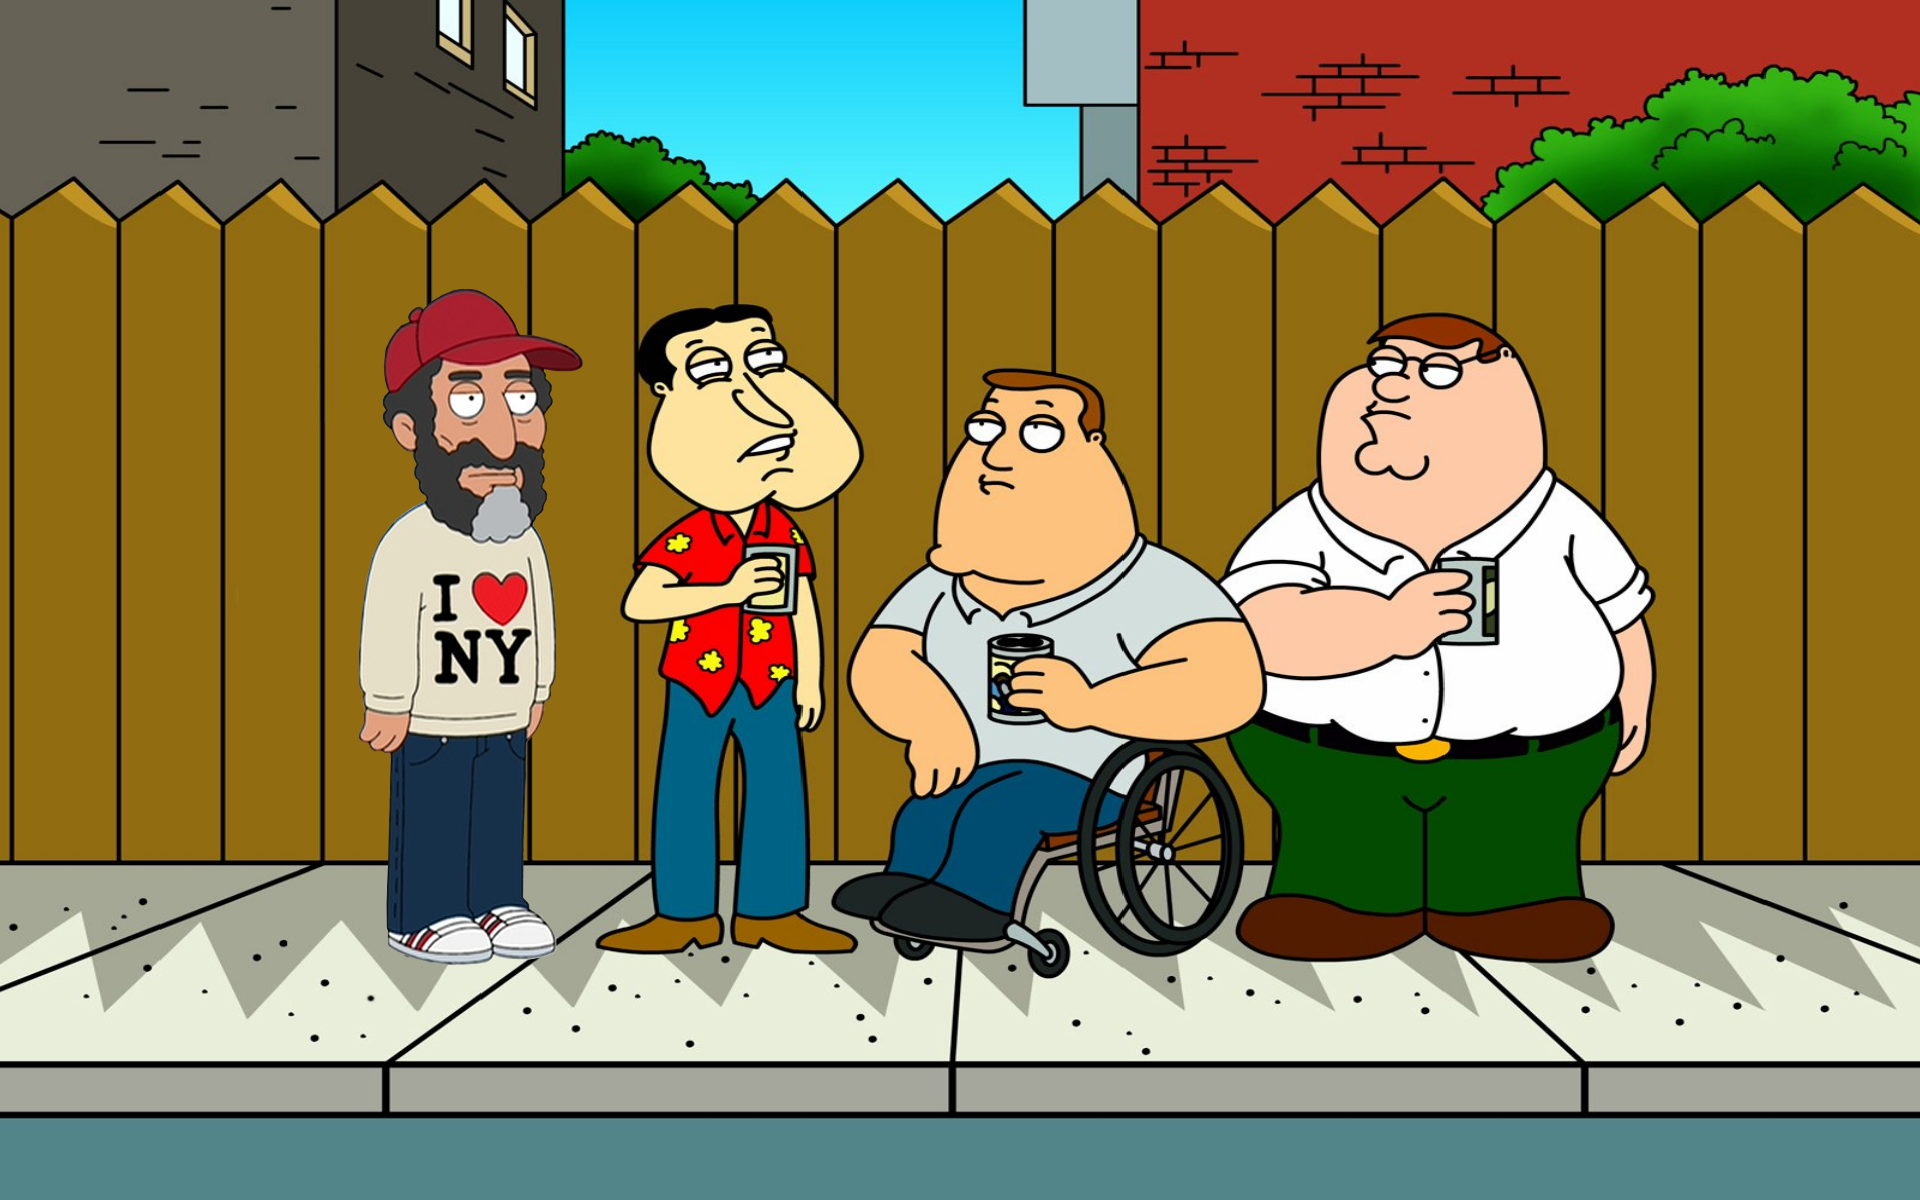 Family Guy, Нью-Йорк, сериалы - обои на рабочий стол